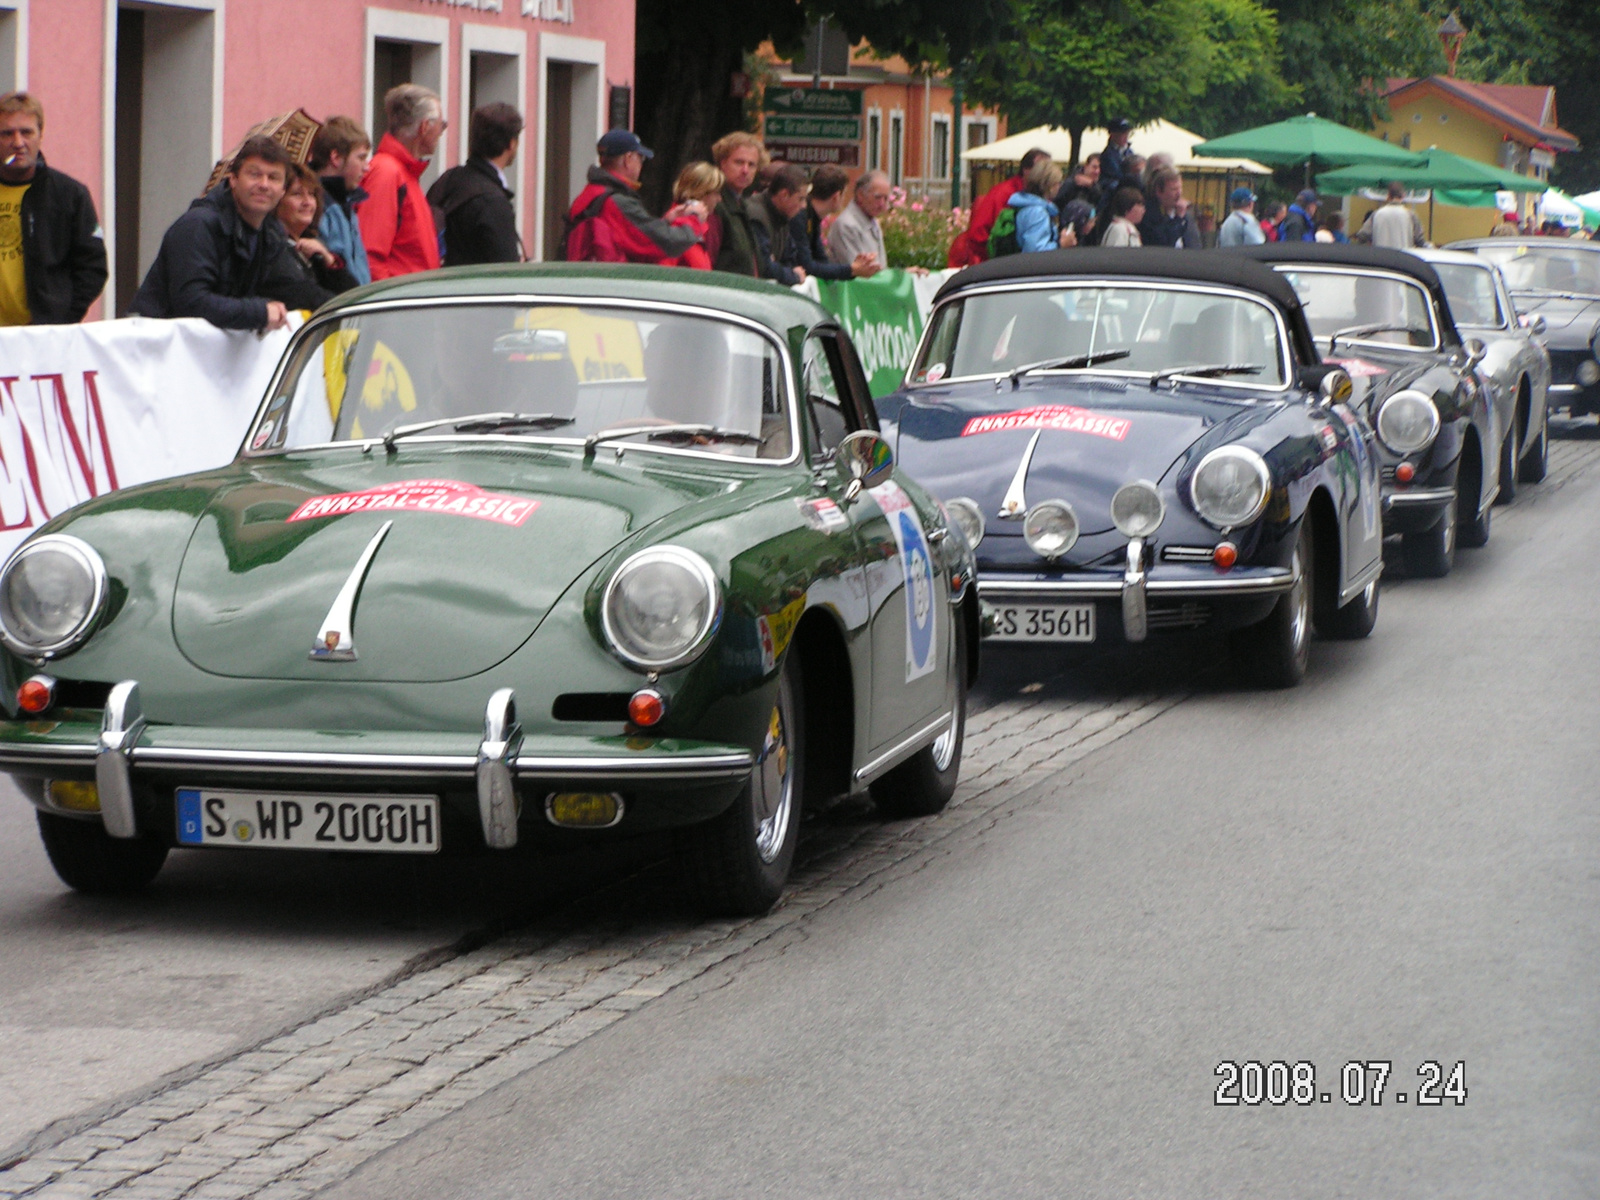 356-os Porsche-k egymás között